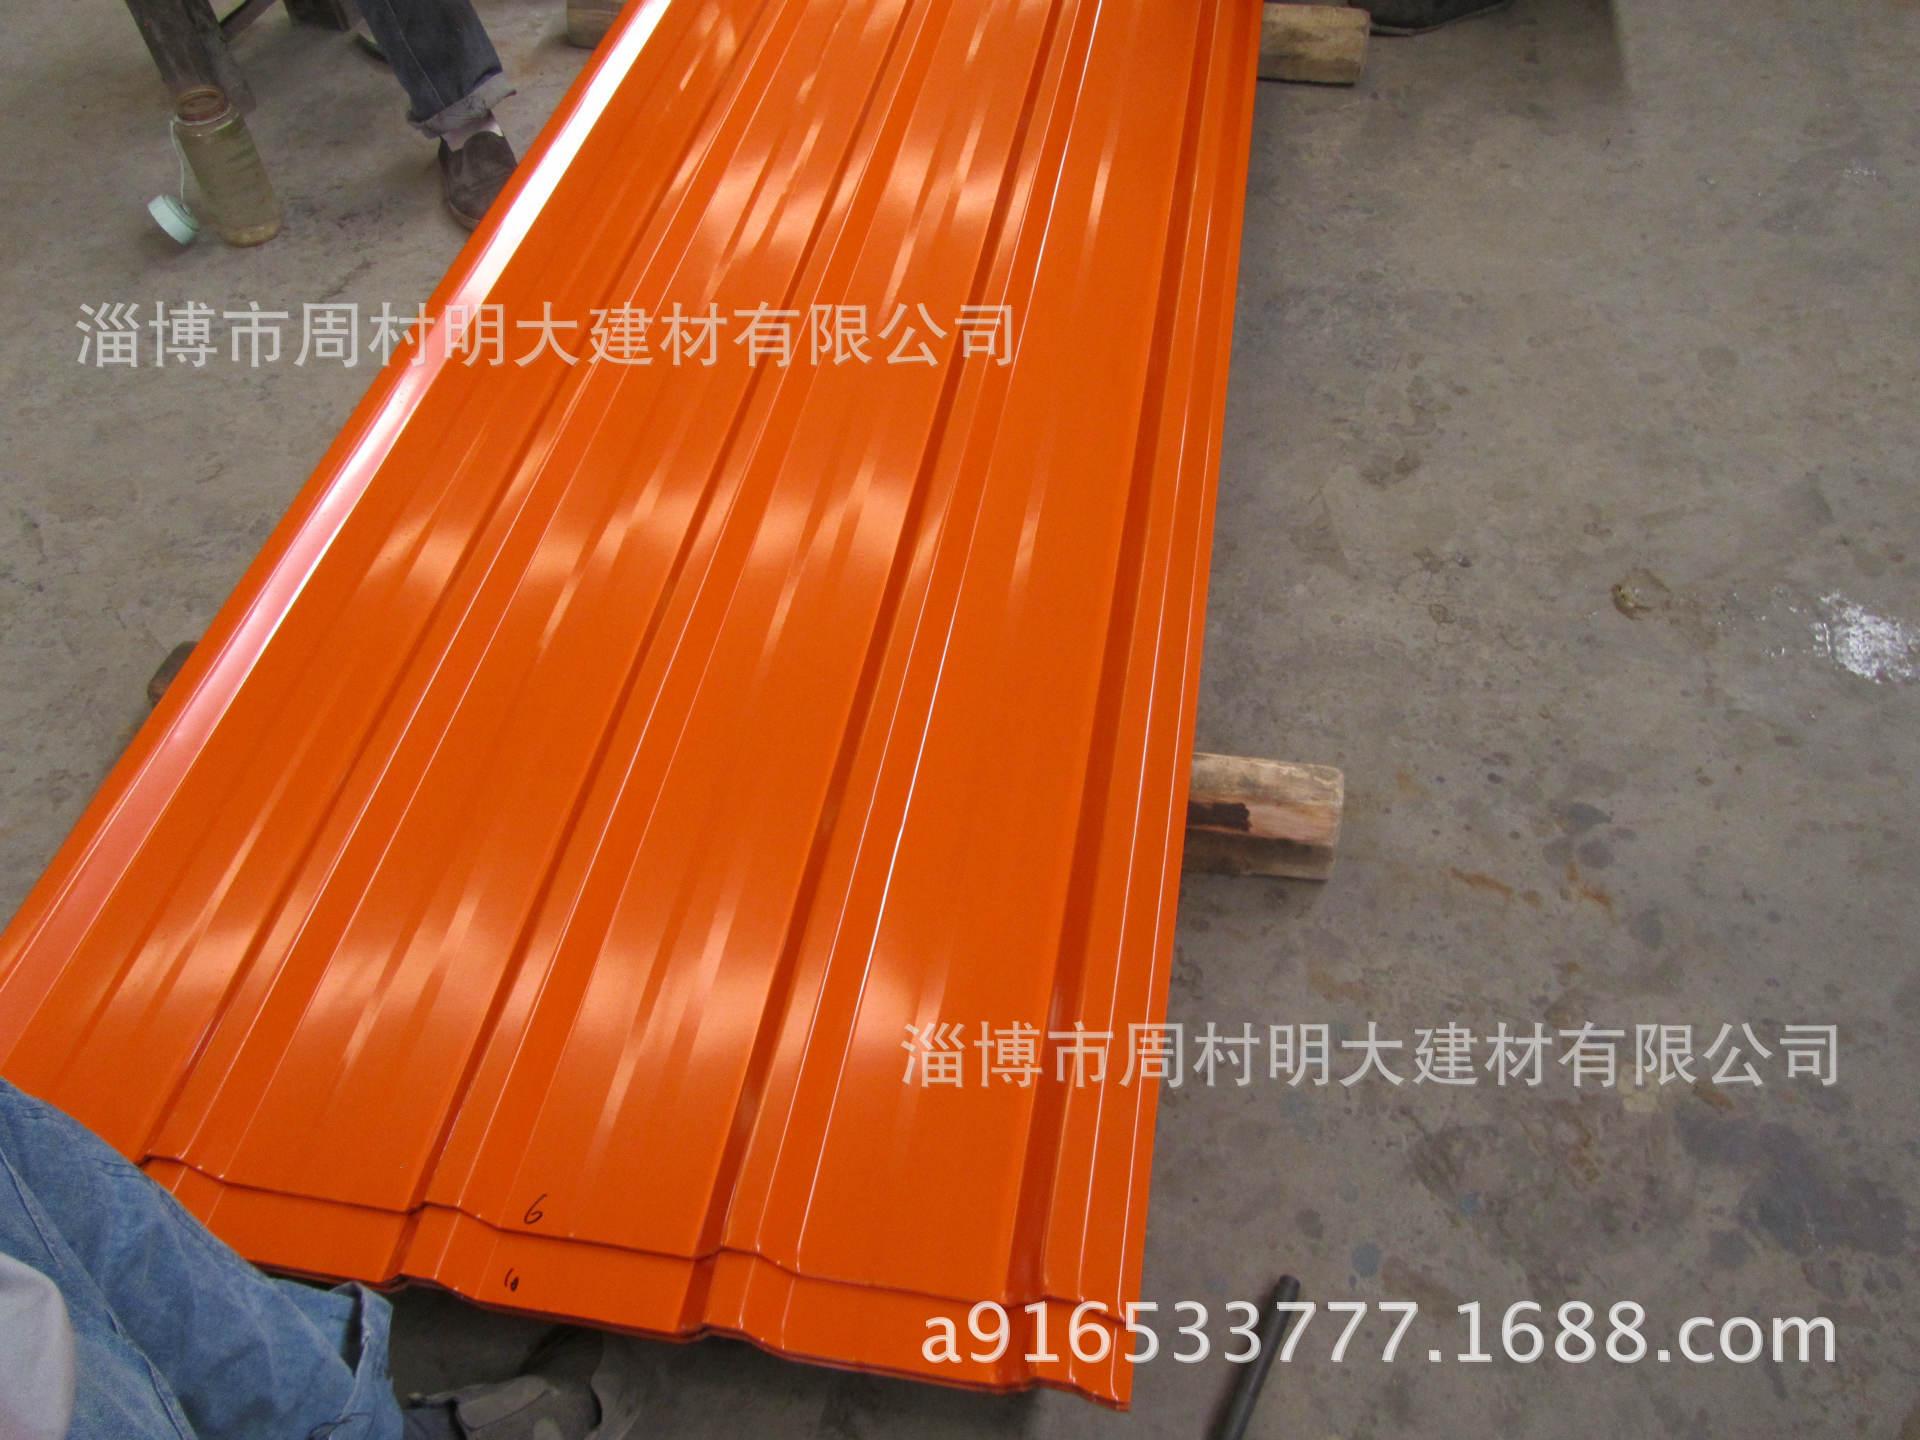 厂家长期销售各种波浪瓦 梯形瓦 复合板 不锈钢瓦 不锈钢材瓦示例图13